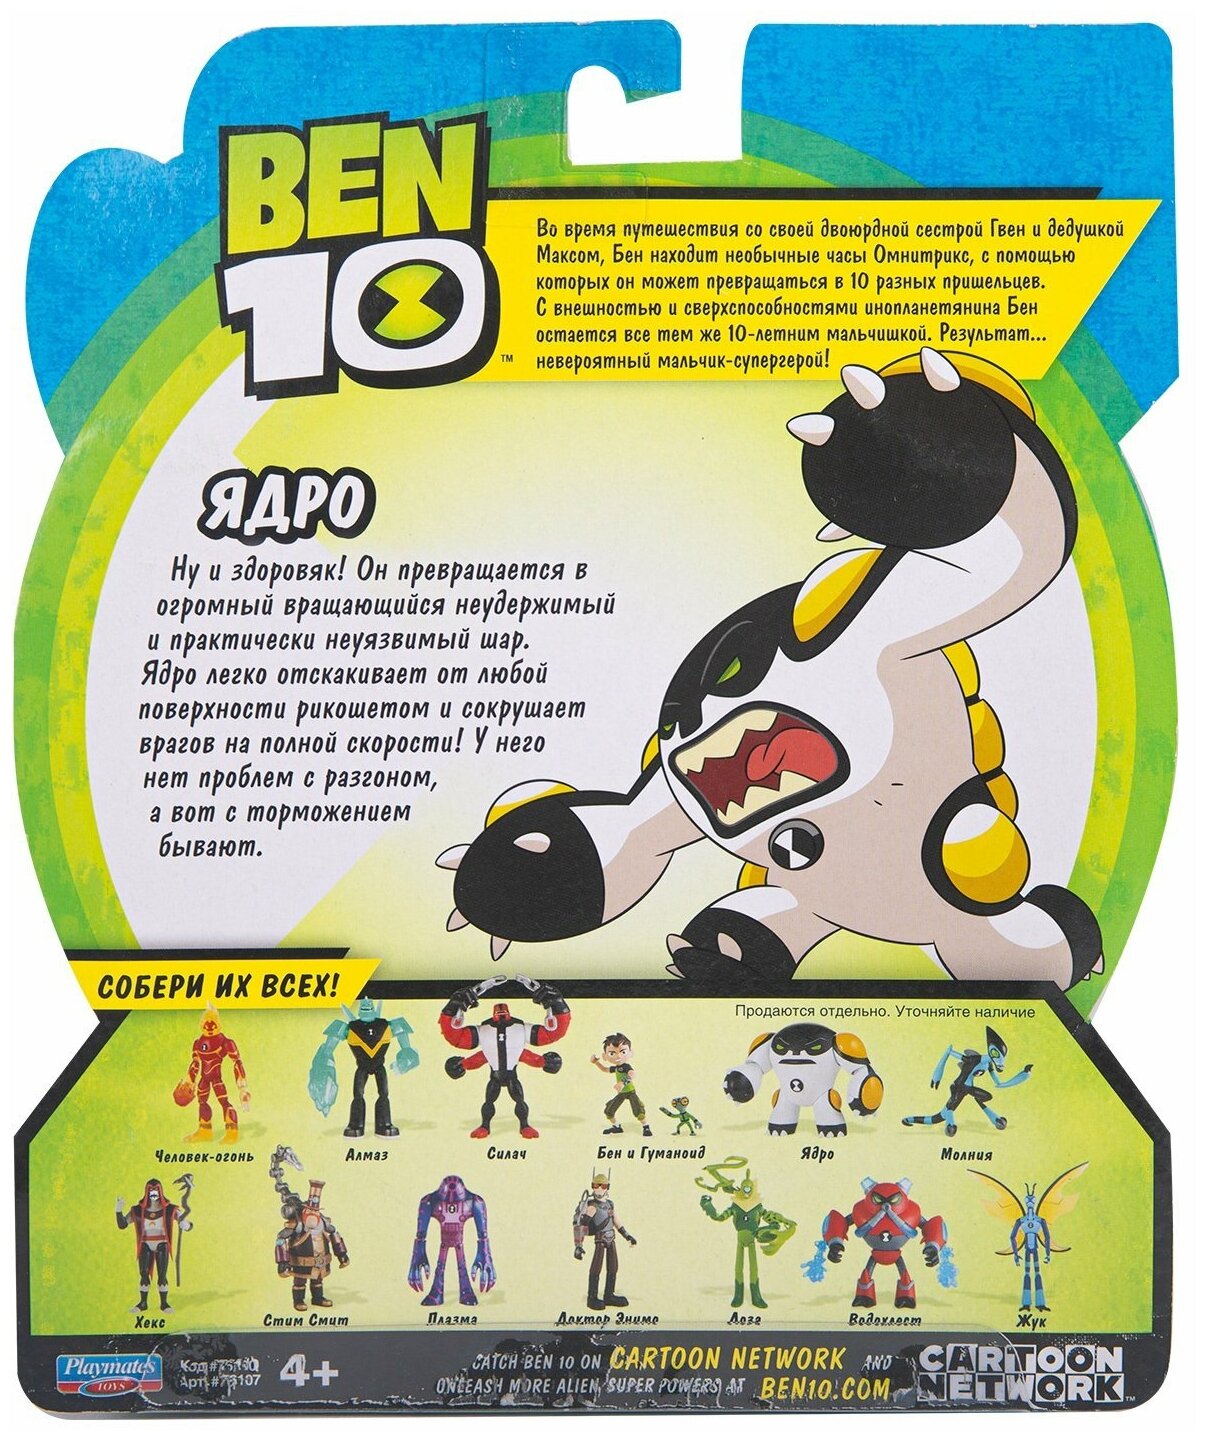 Ben-10 - фото №2